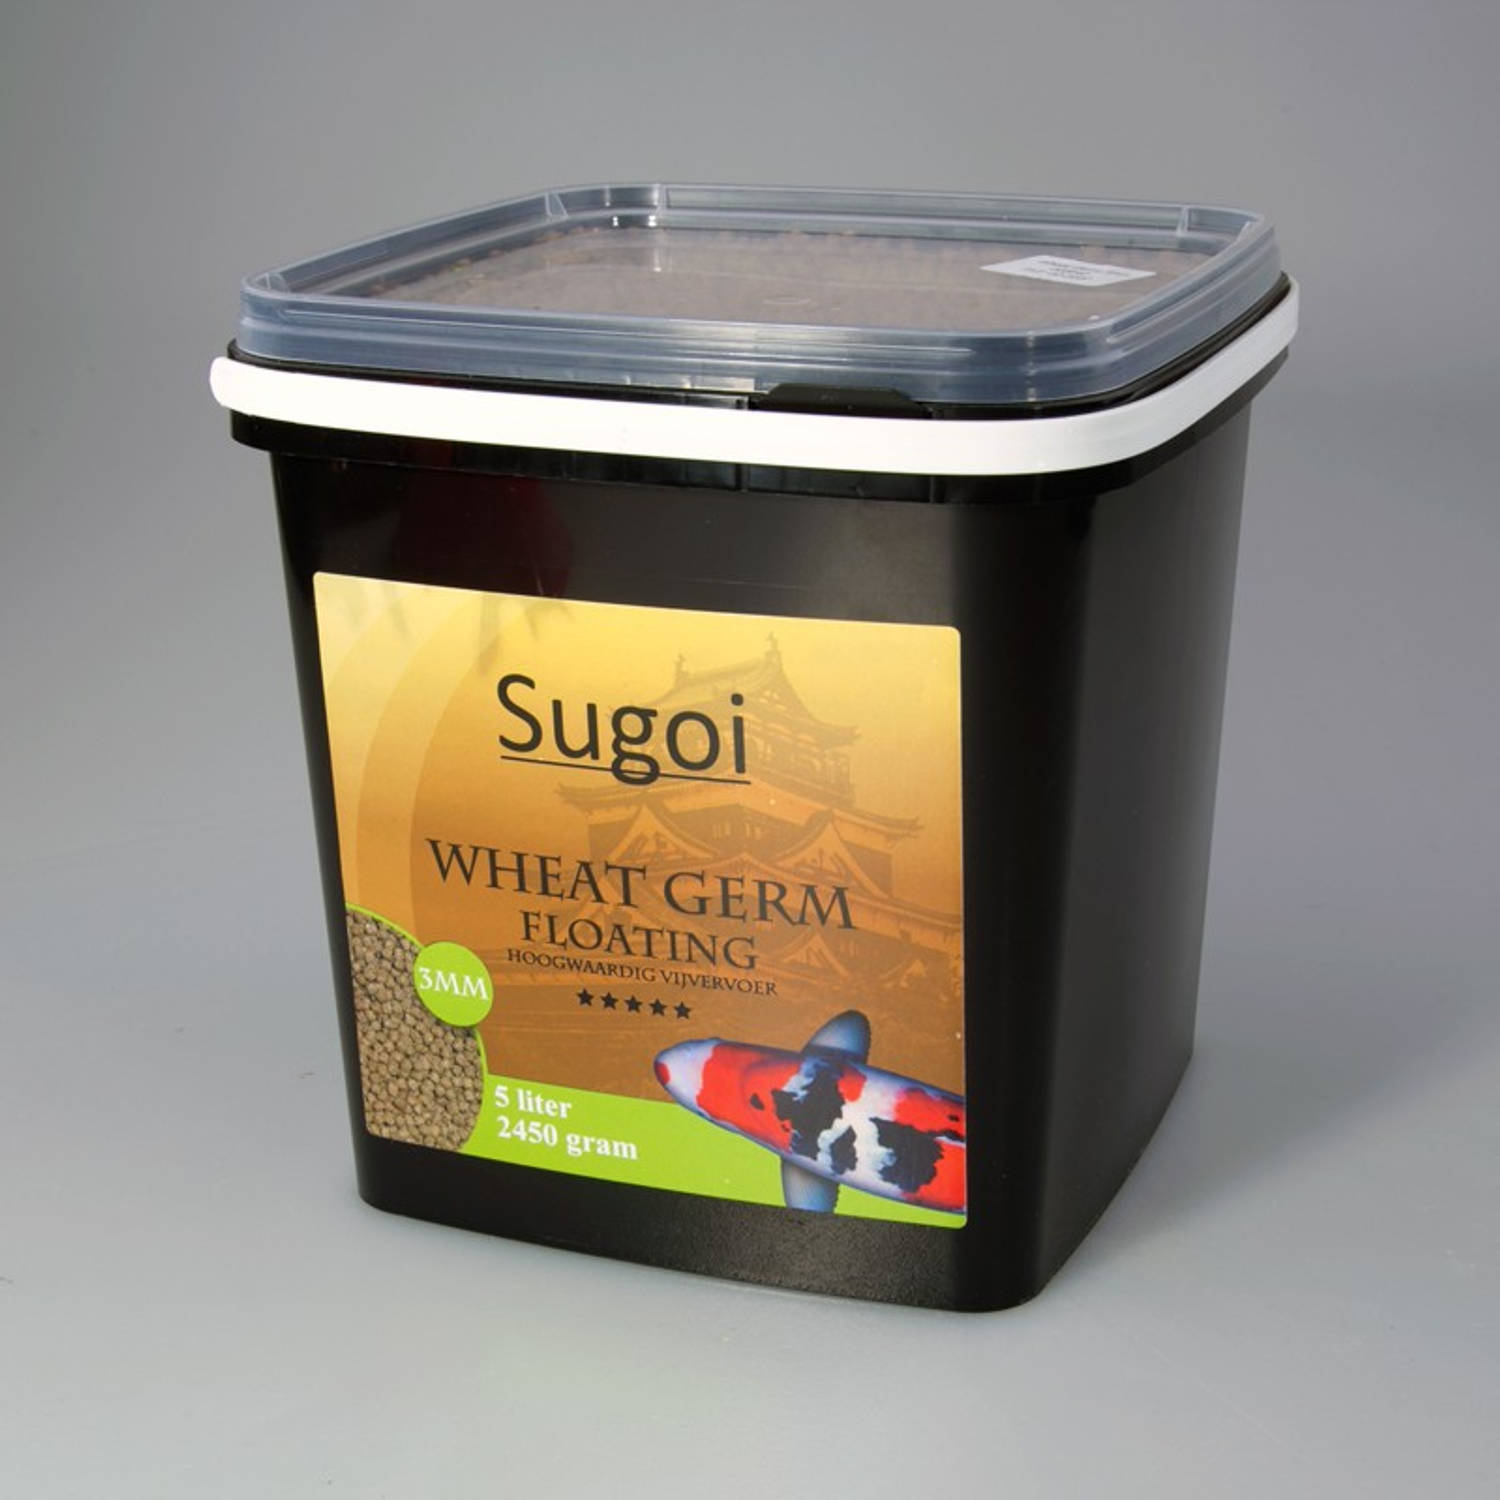 Suren Collection - Sugoi wheat germ 3 mm 5 liter